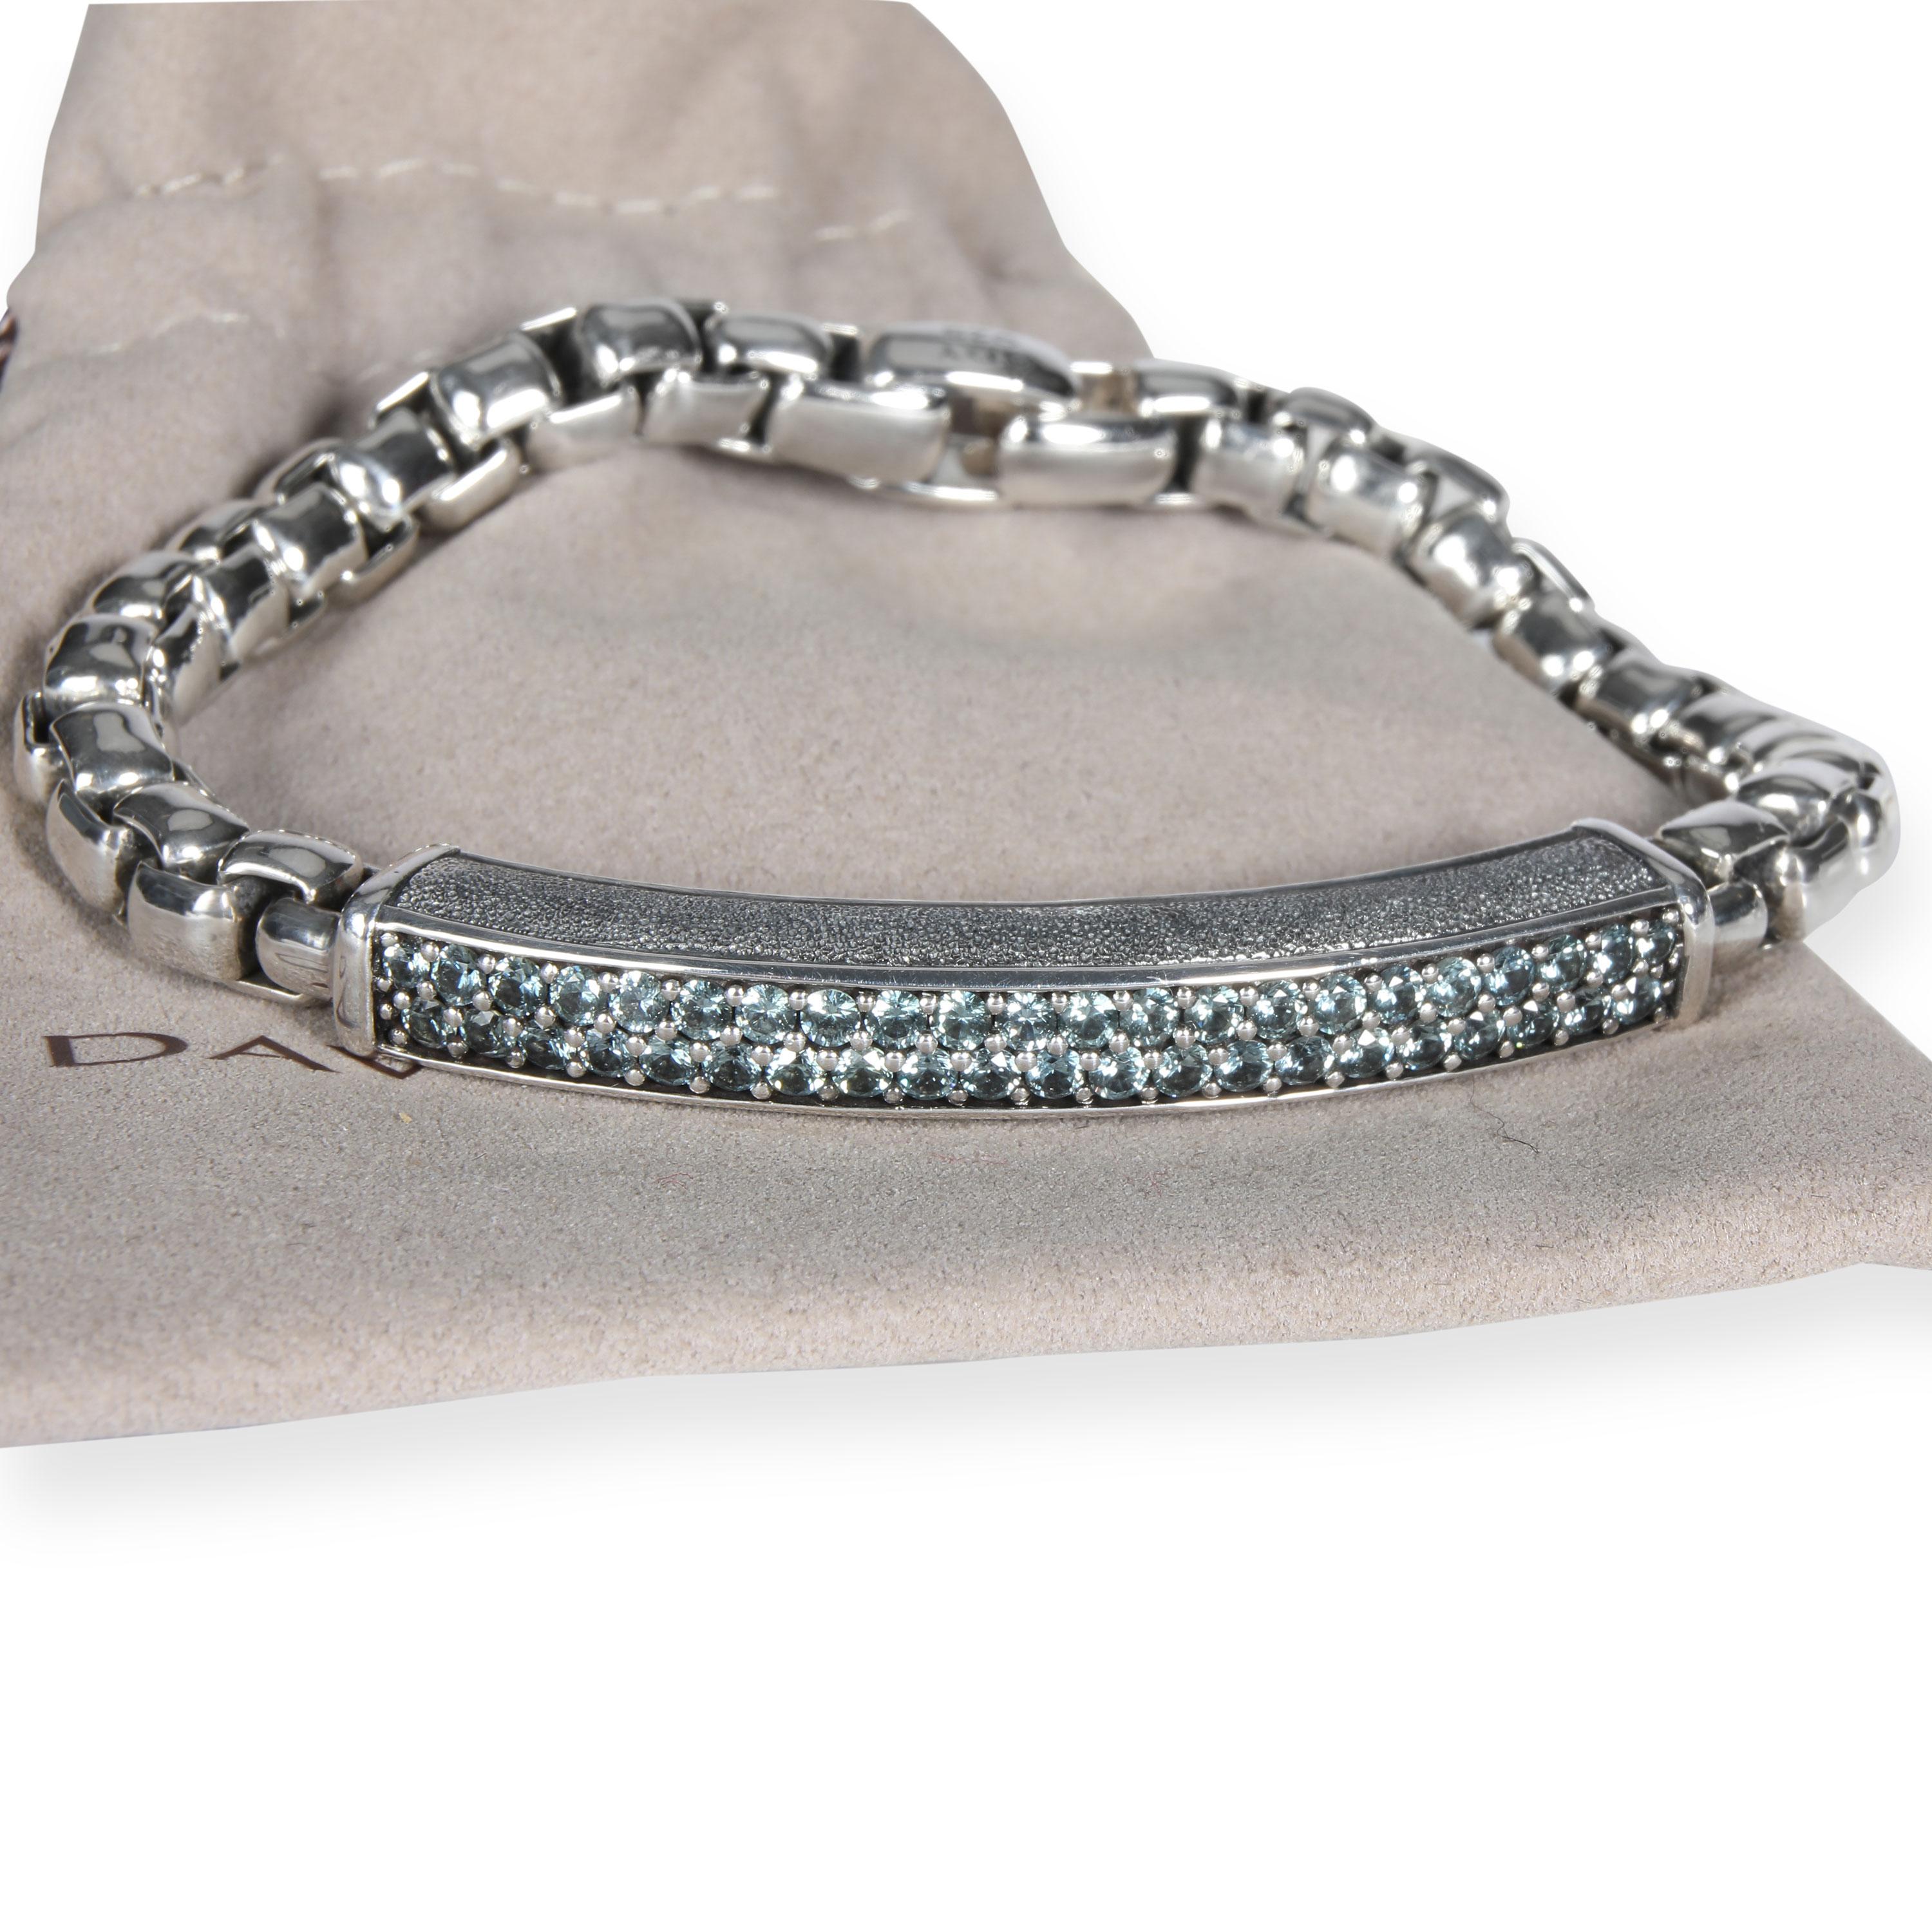 Men's David Yurman Streamline Sapphire Bracelet in Sterling Silver